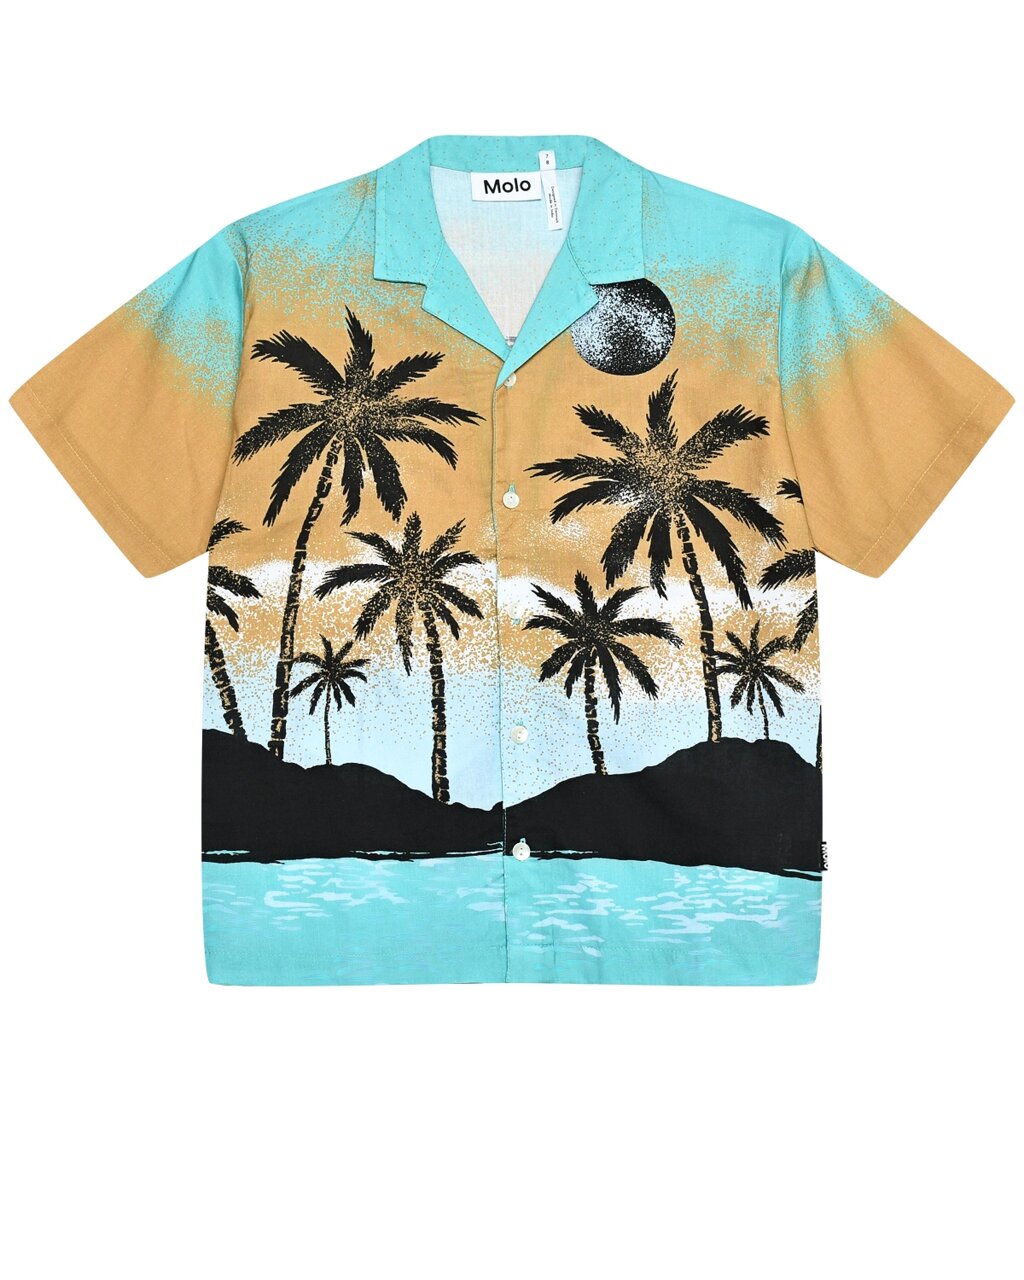 Рубашка с принтом пальмы Molo от компании Admi - фото 1